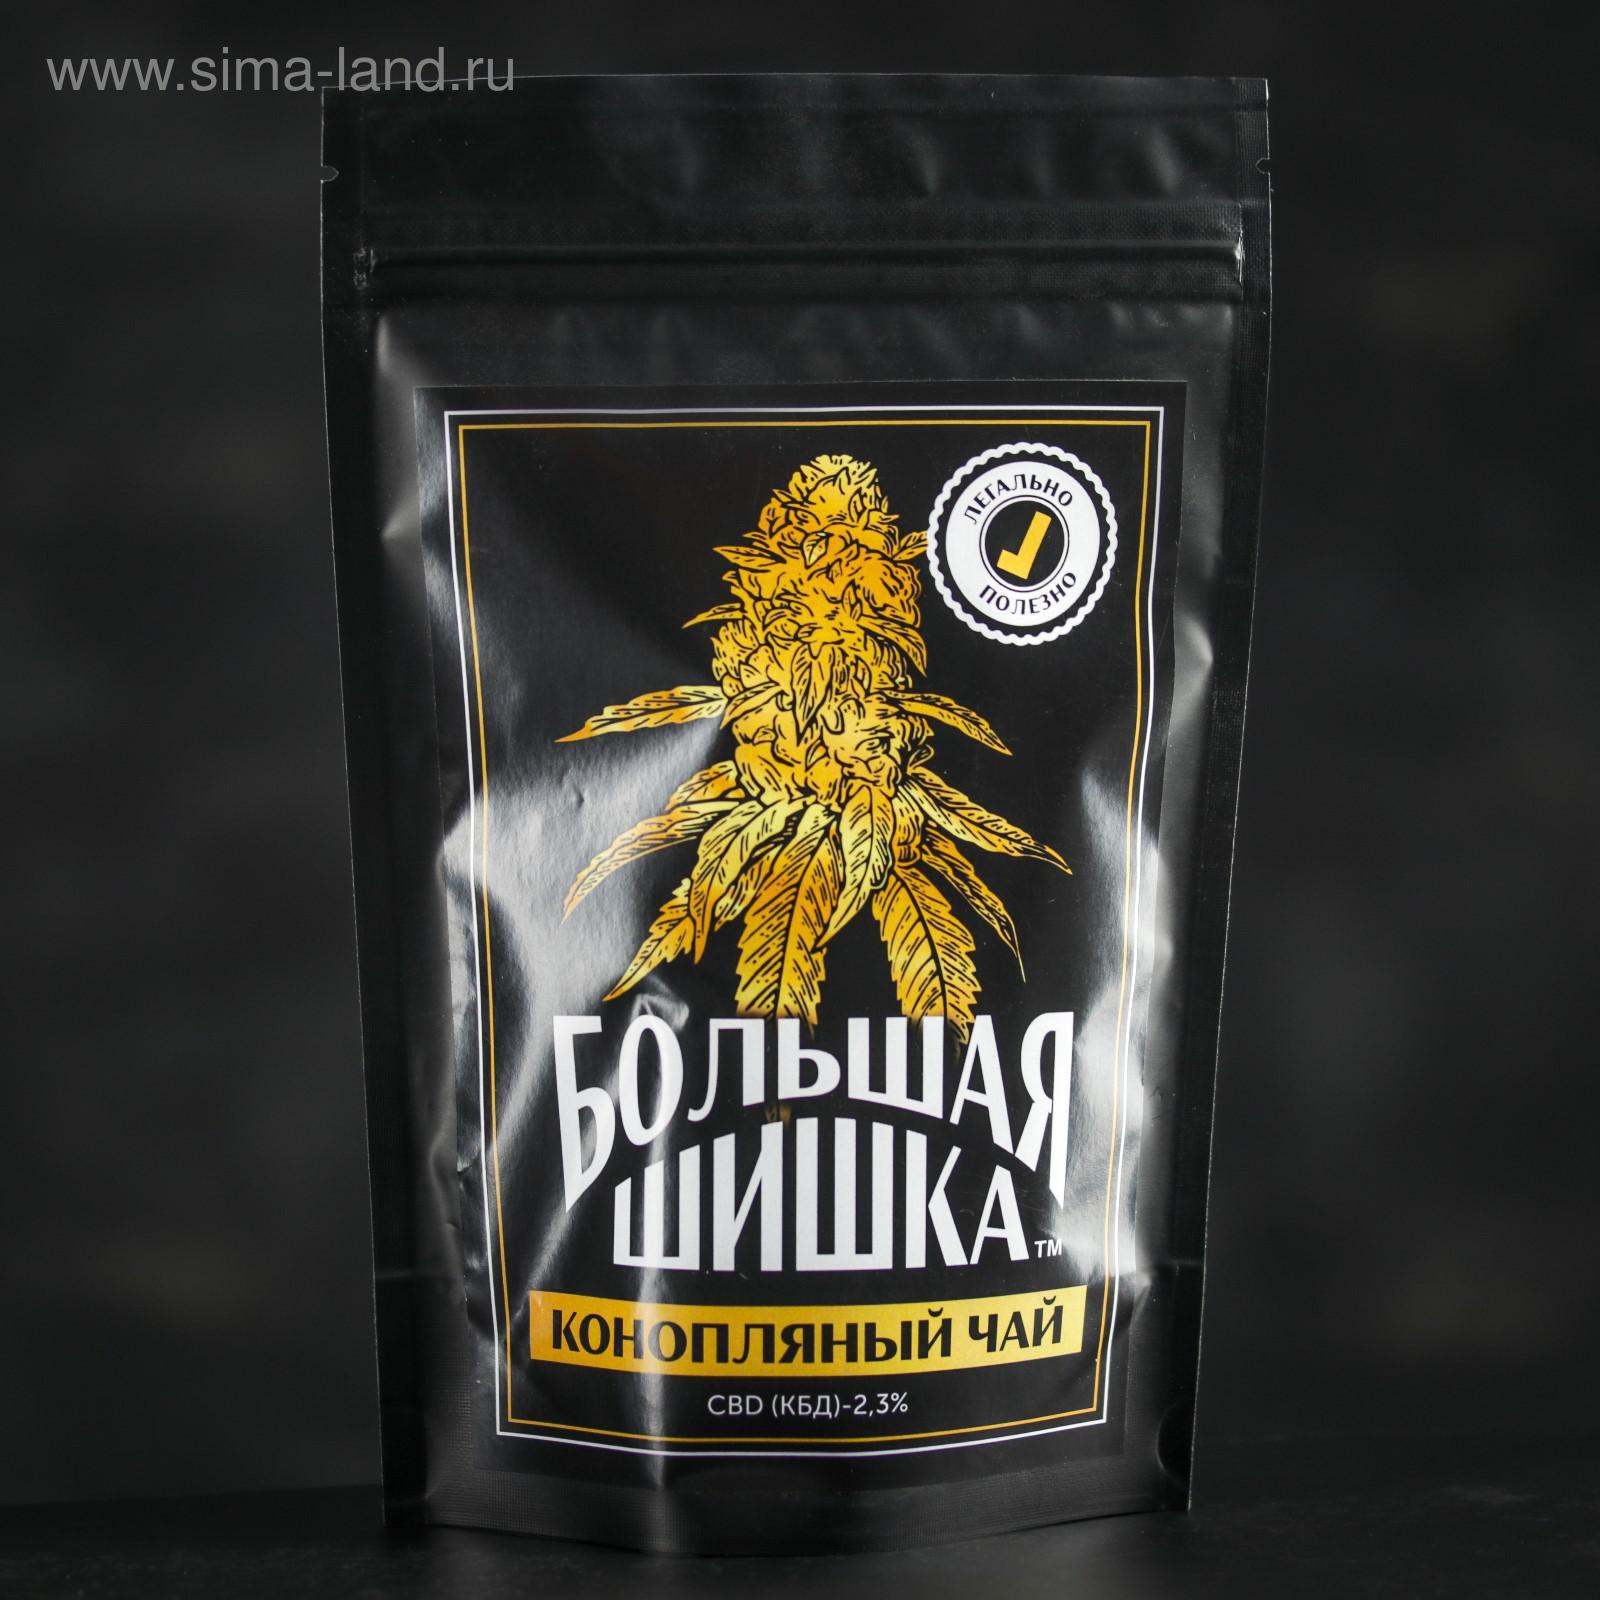 Купить шишки марихуаны в украине гидропоника и ее выращивание марихуана